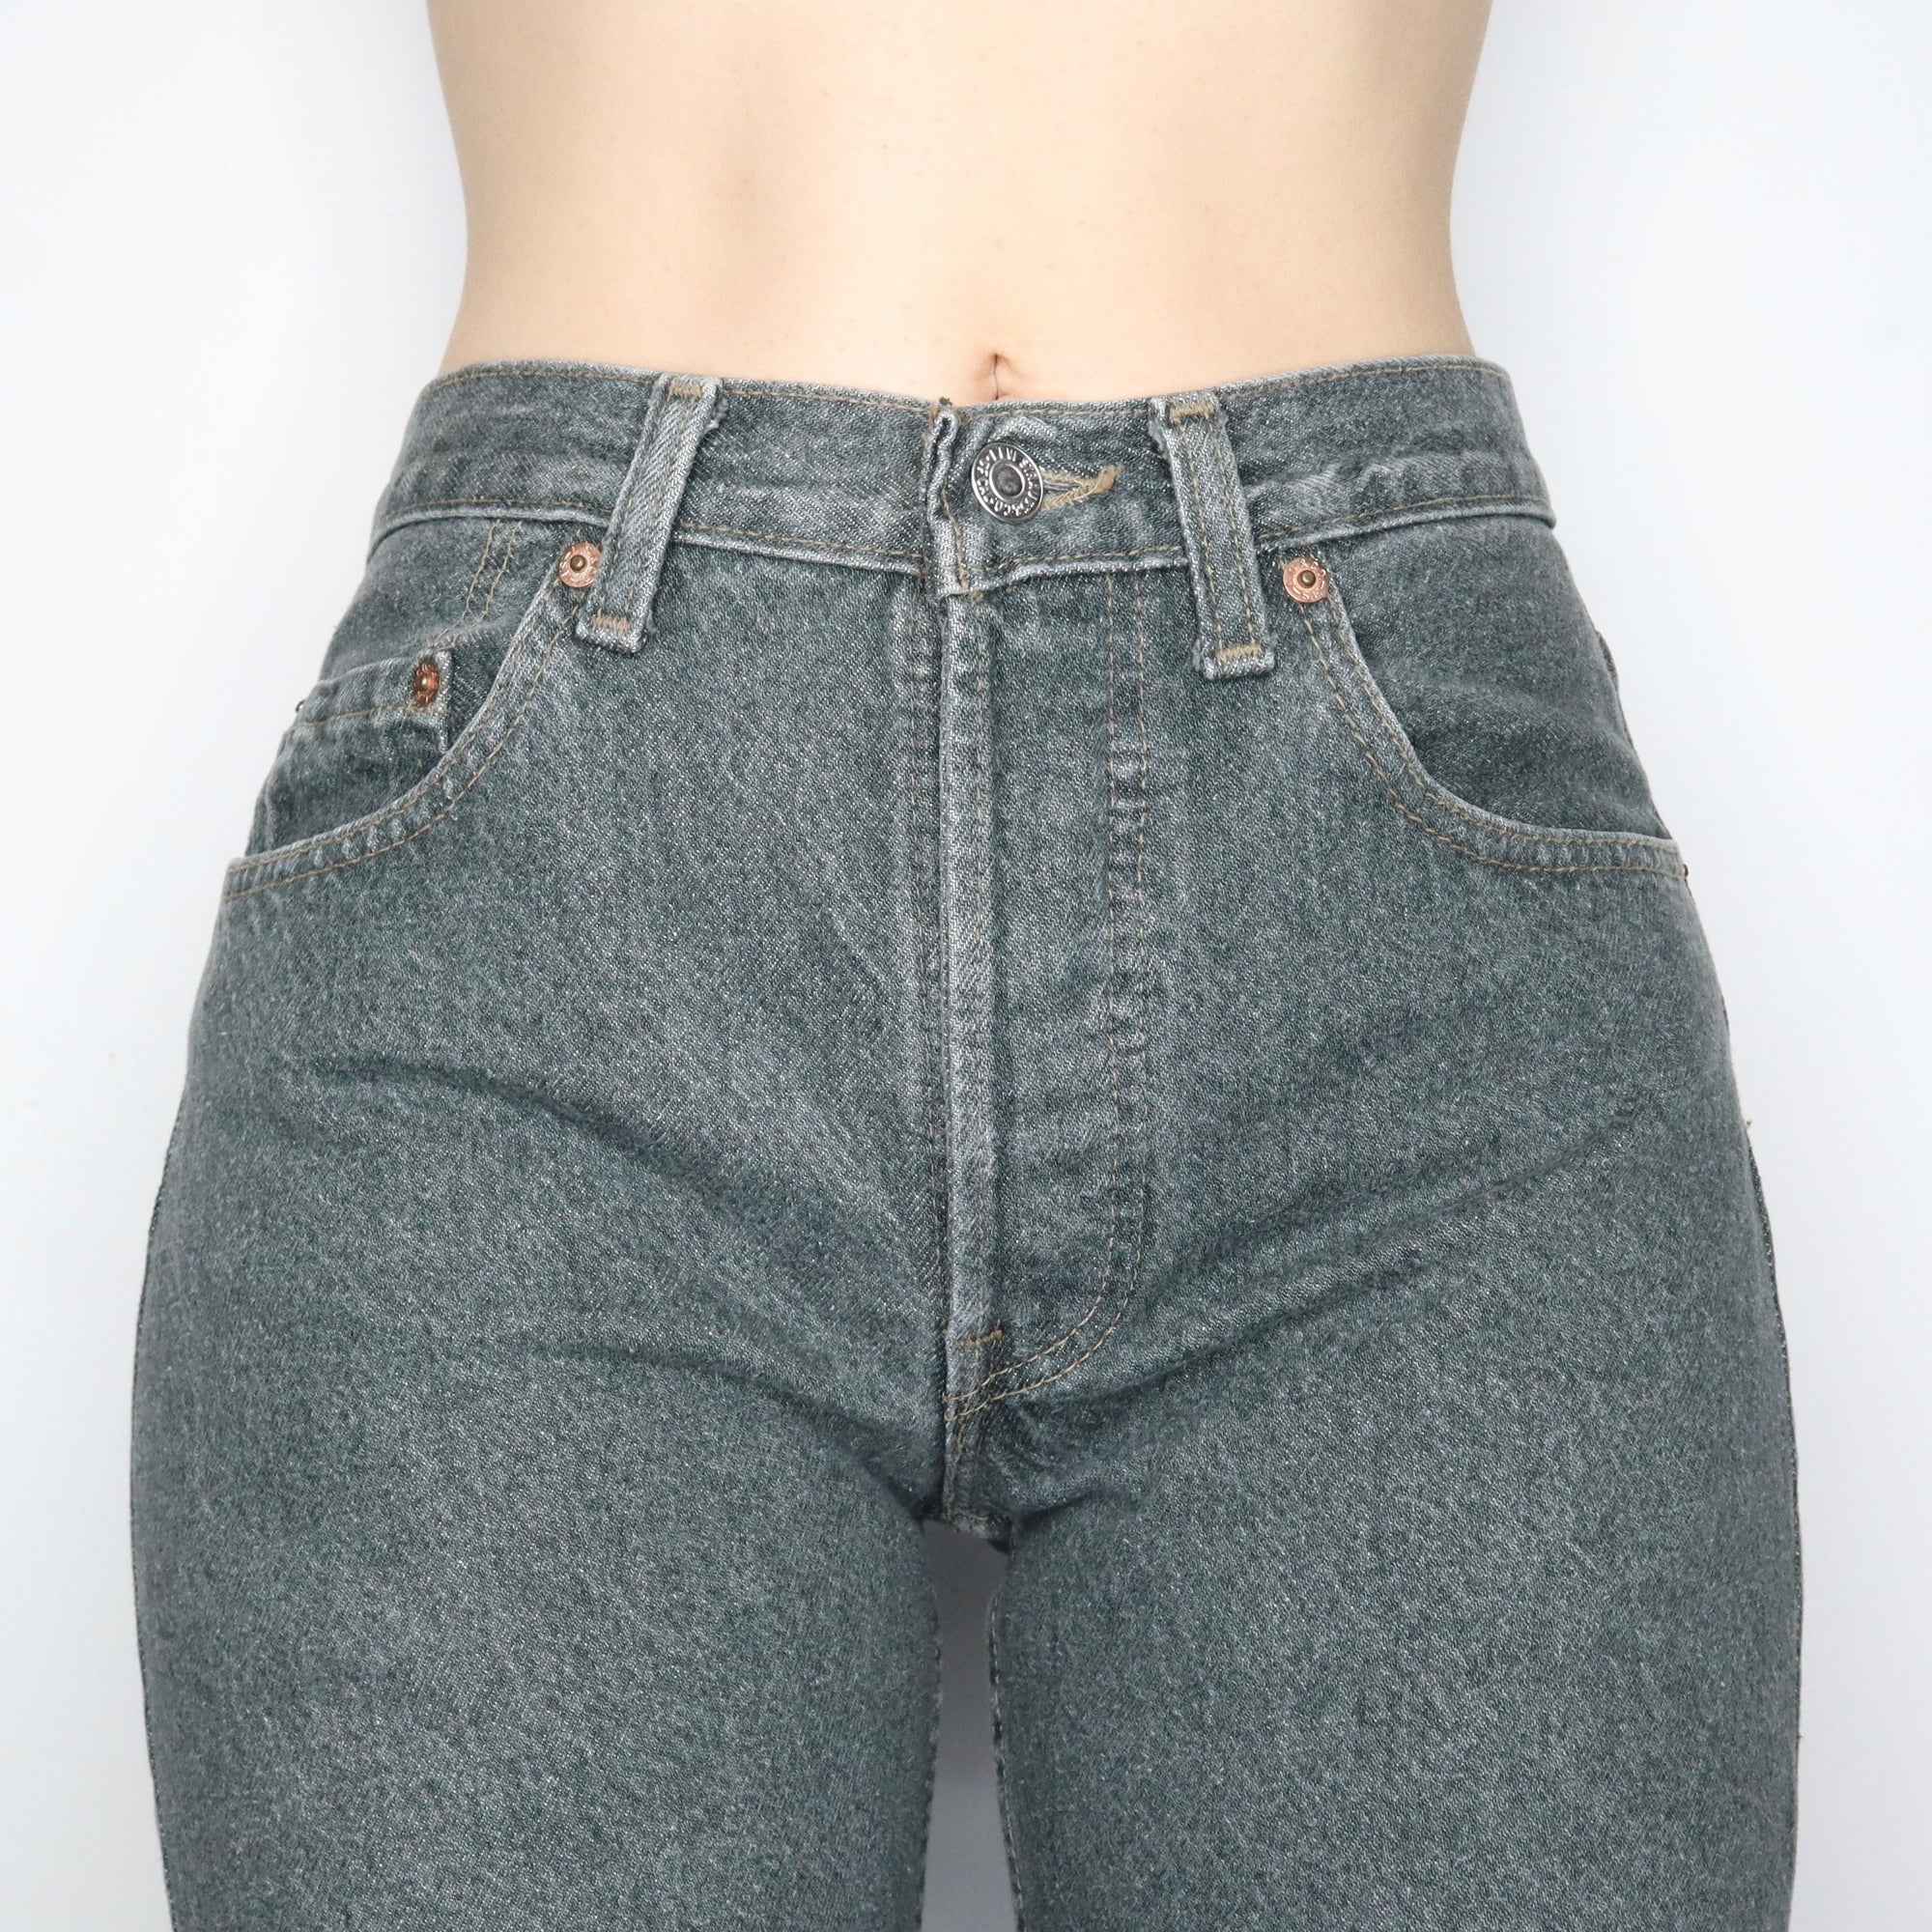 501 Levi's Jeans (S-M)